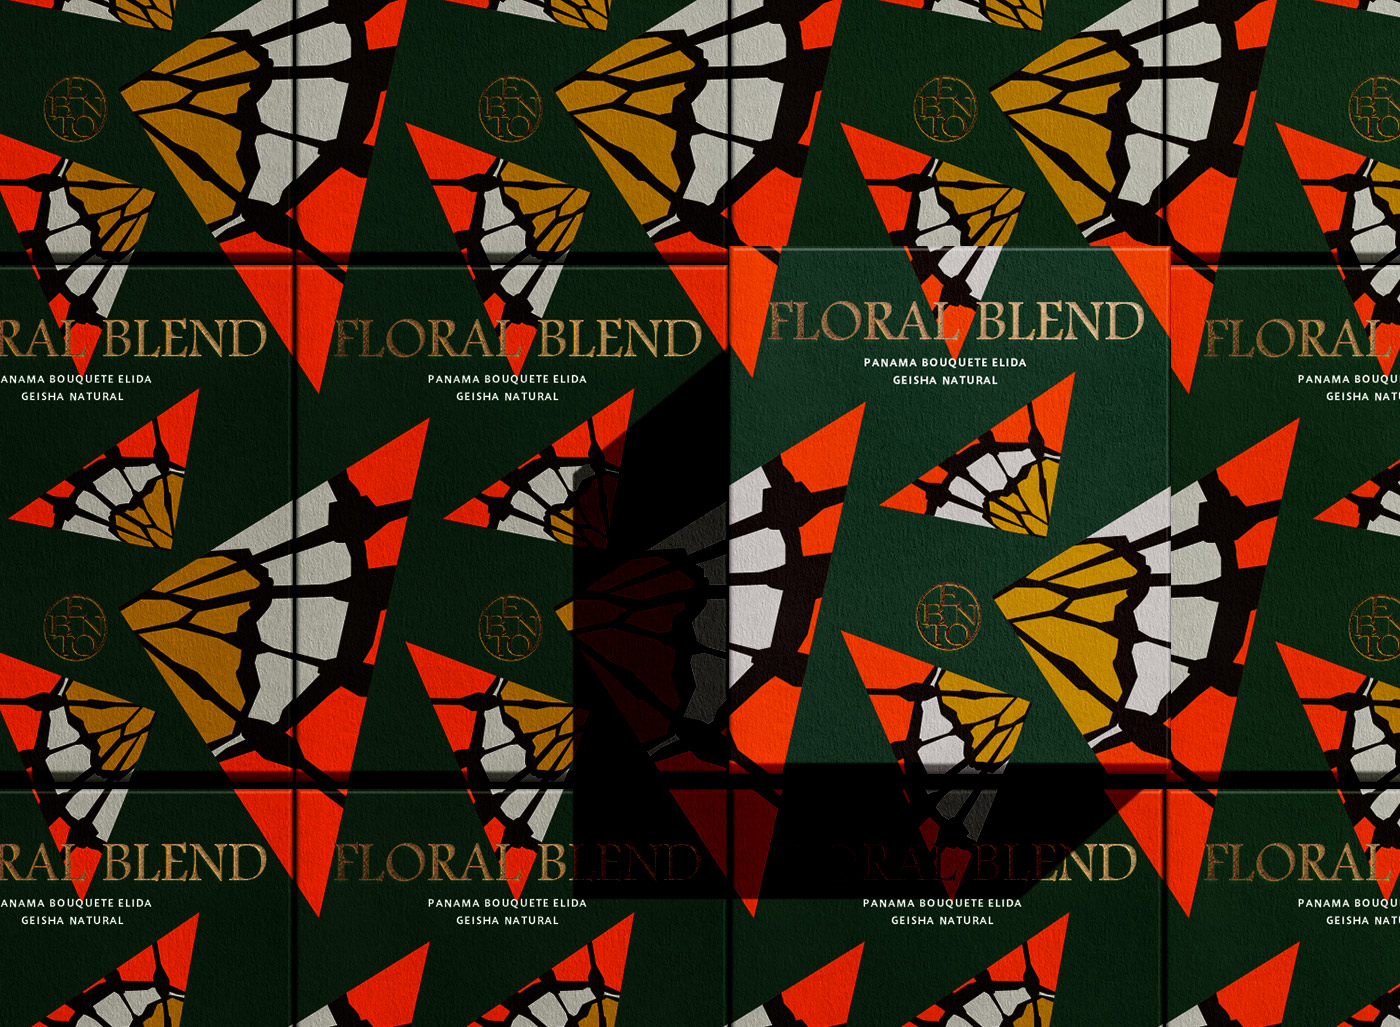 Floral Blend 4包裝設計彩盒印刷